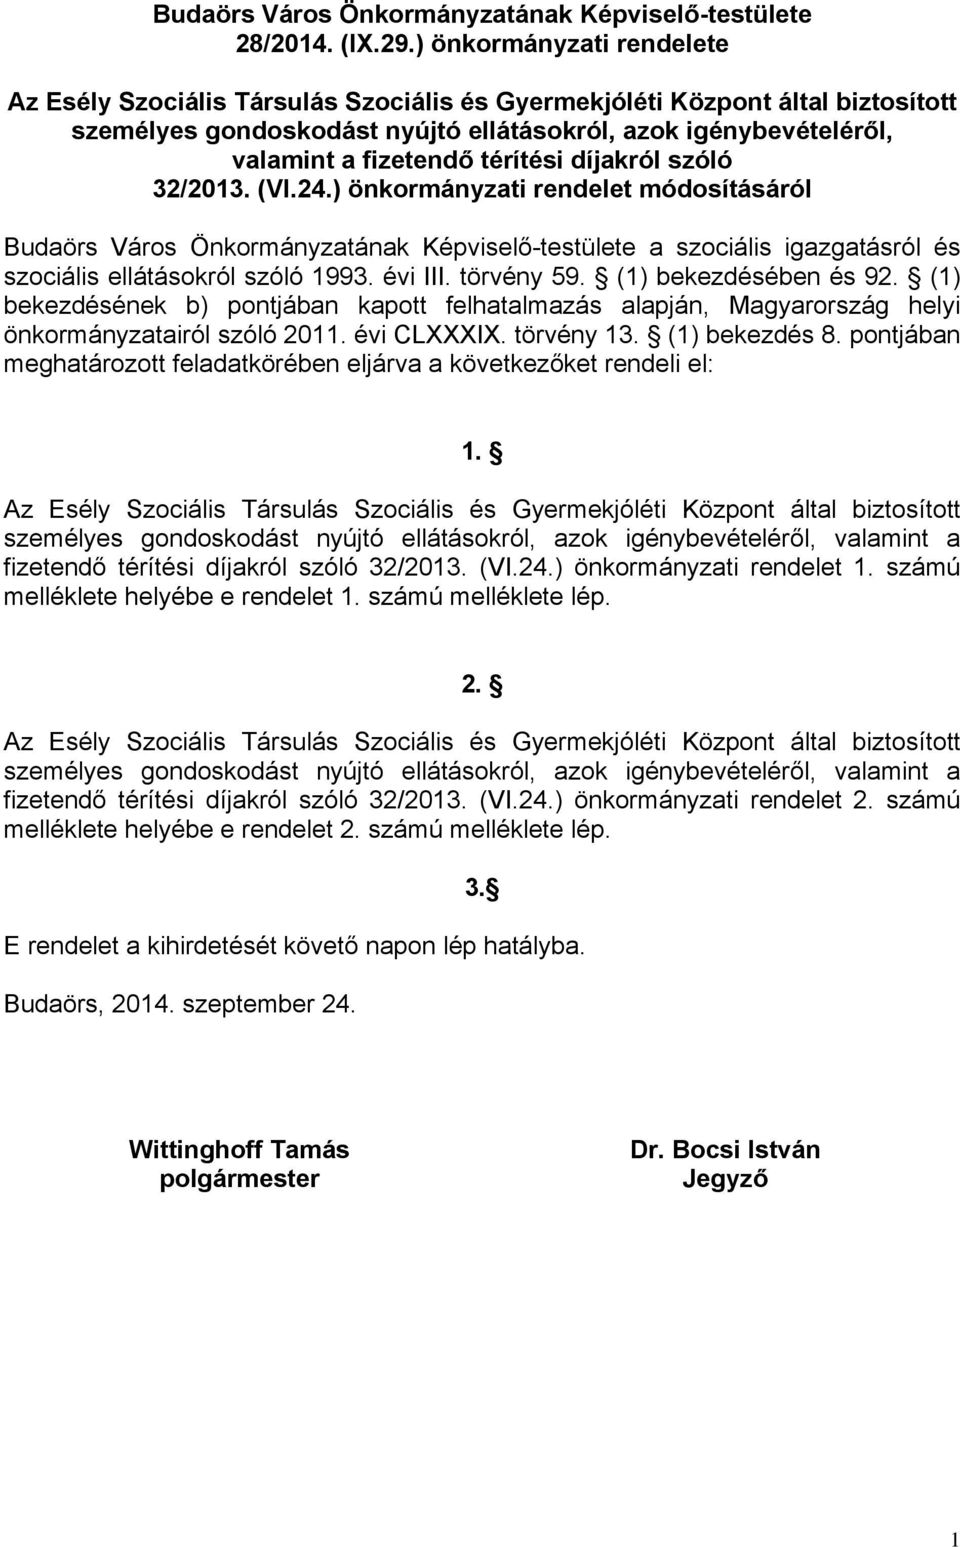 térítési díjakról szóló 32/2013. (VI.24.) önkormányzati rendelet módosításáról Budaörs Város Önkormányzatának Képviselő-testülete a szociális igazgatásról és szociális ellátásokról szóló 1993.